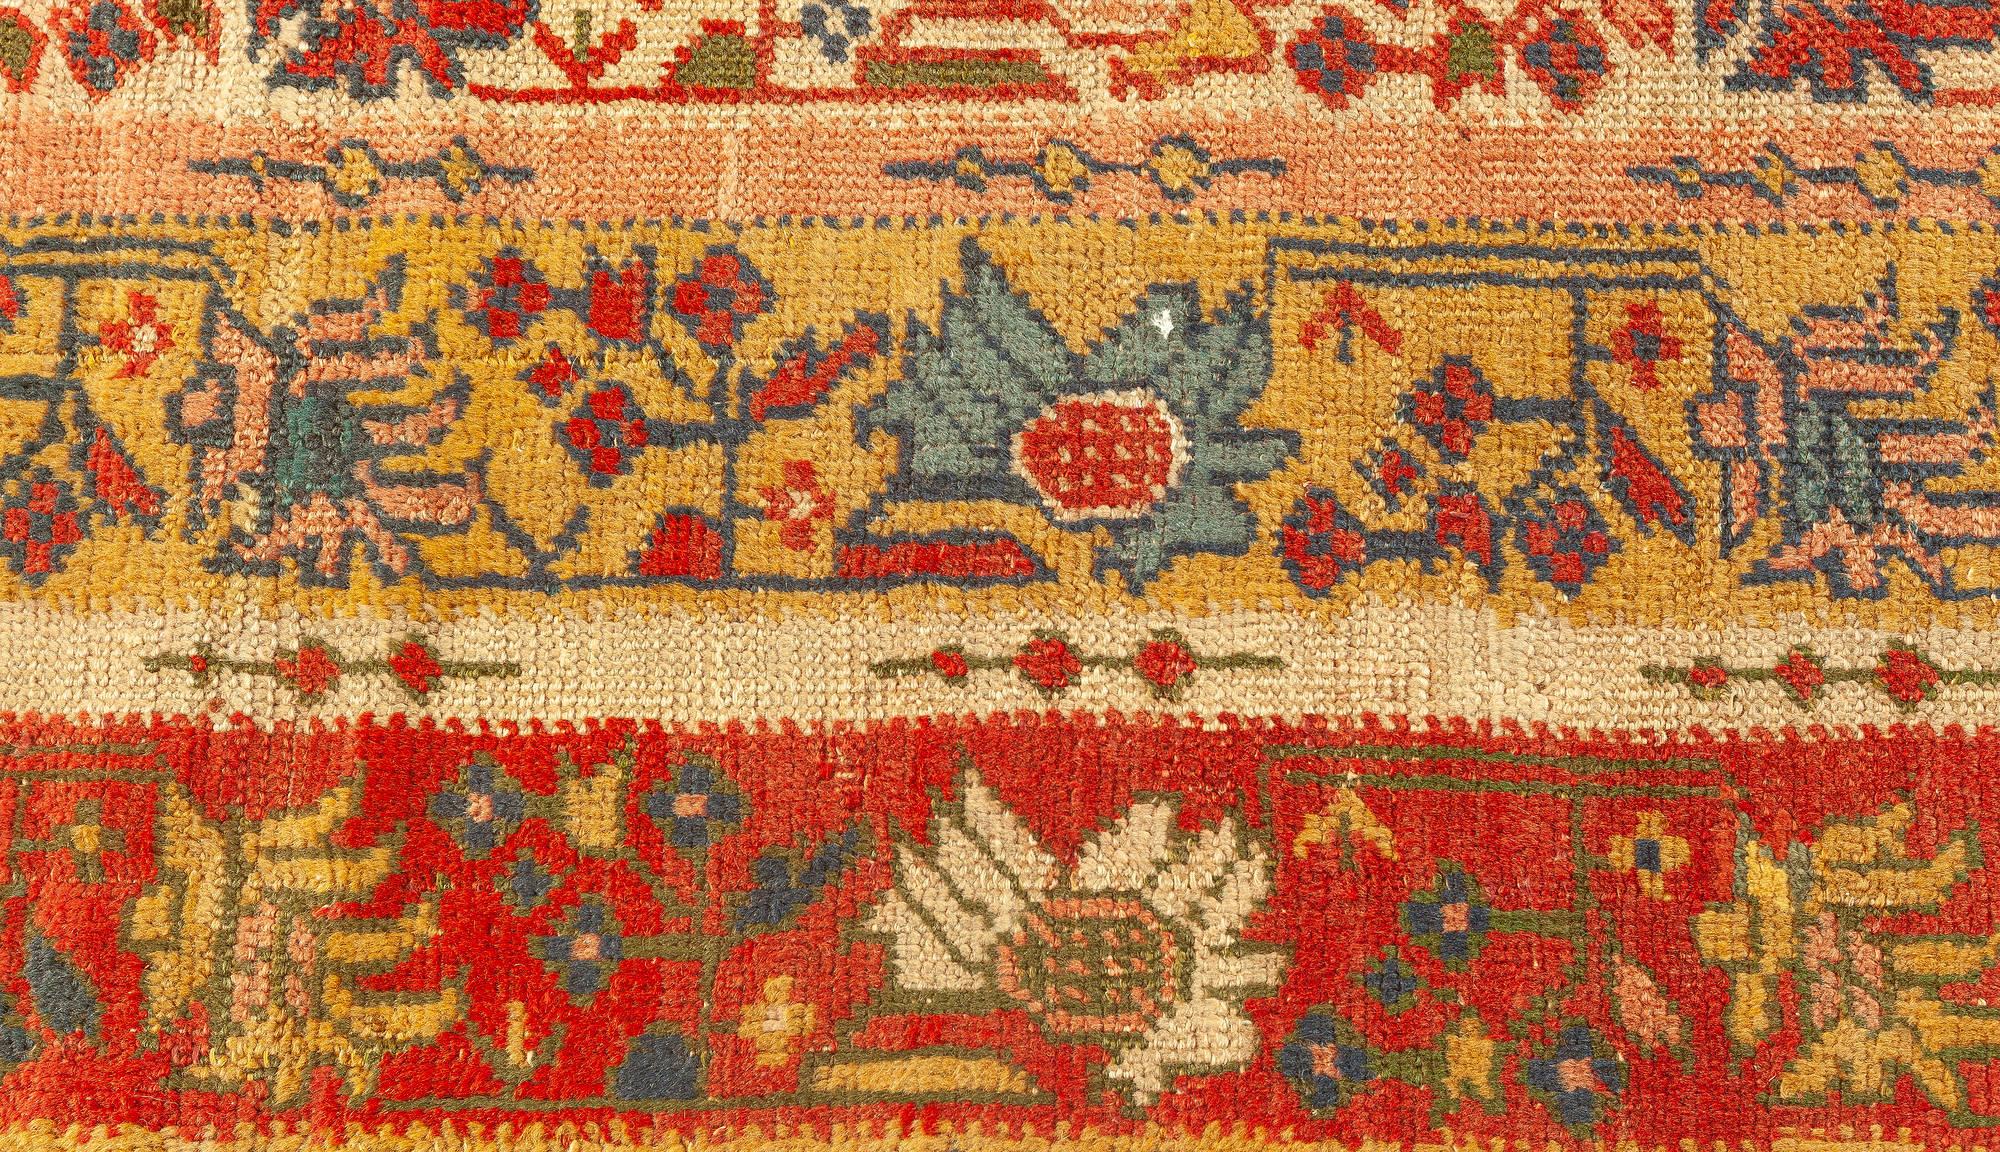 Tapis de laine botanique turc Oushak du 19e siècle tissé à la main
Taille : 11'8